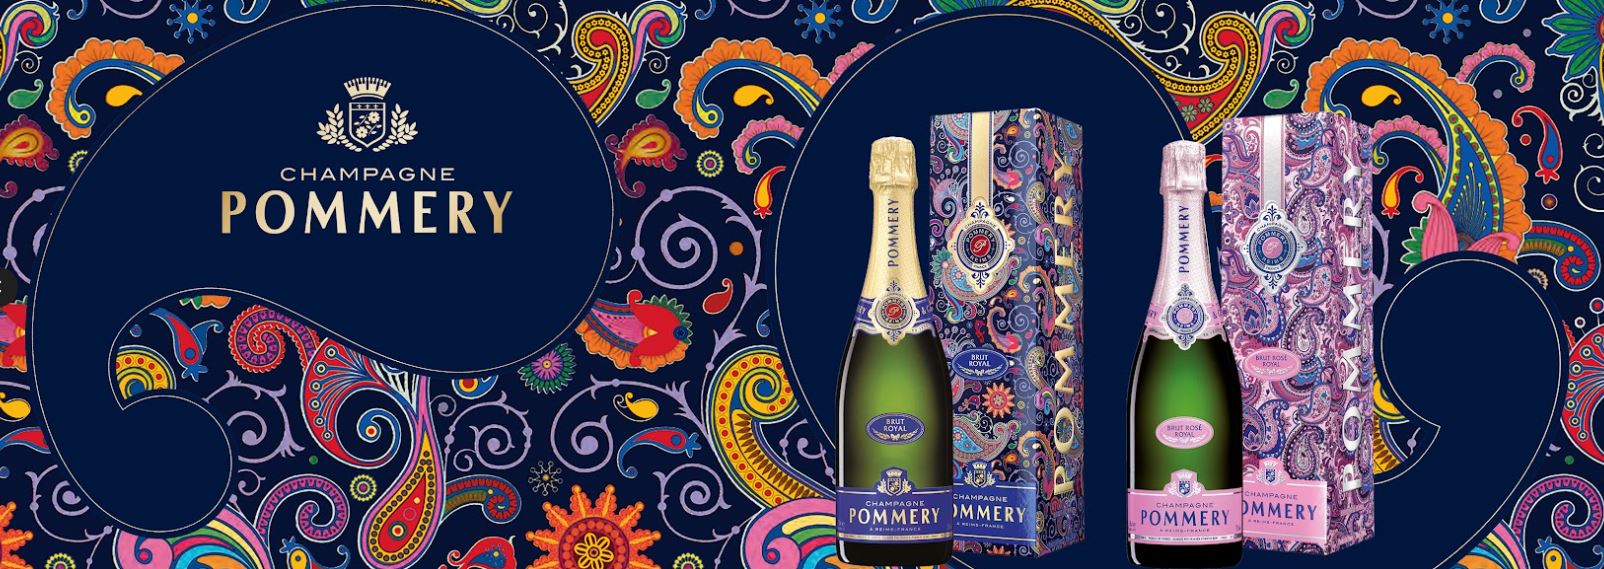 im - POMMERY: Kashmir Gourmetwelten Paisley-Design Genussportal Das - Champagne